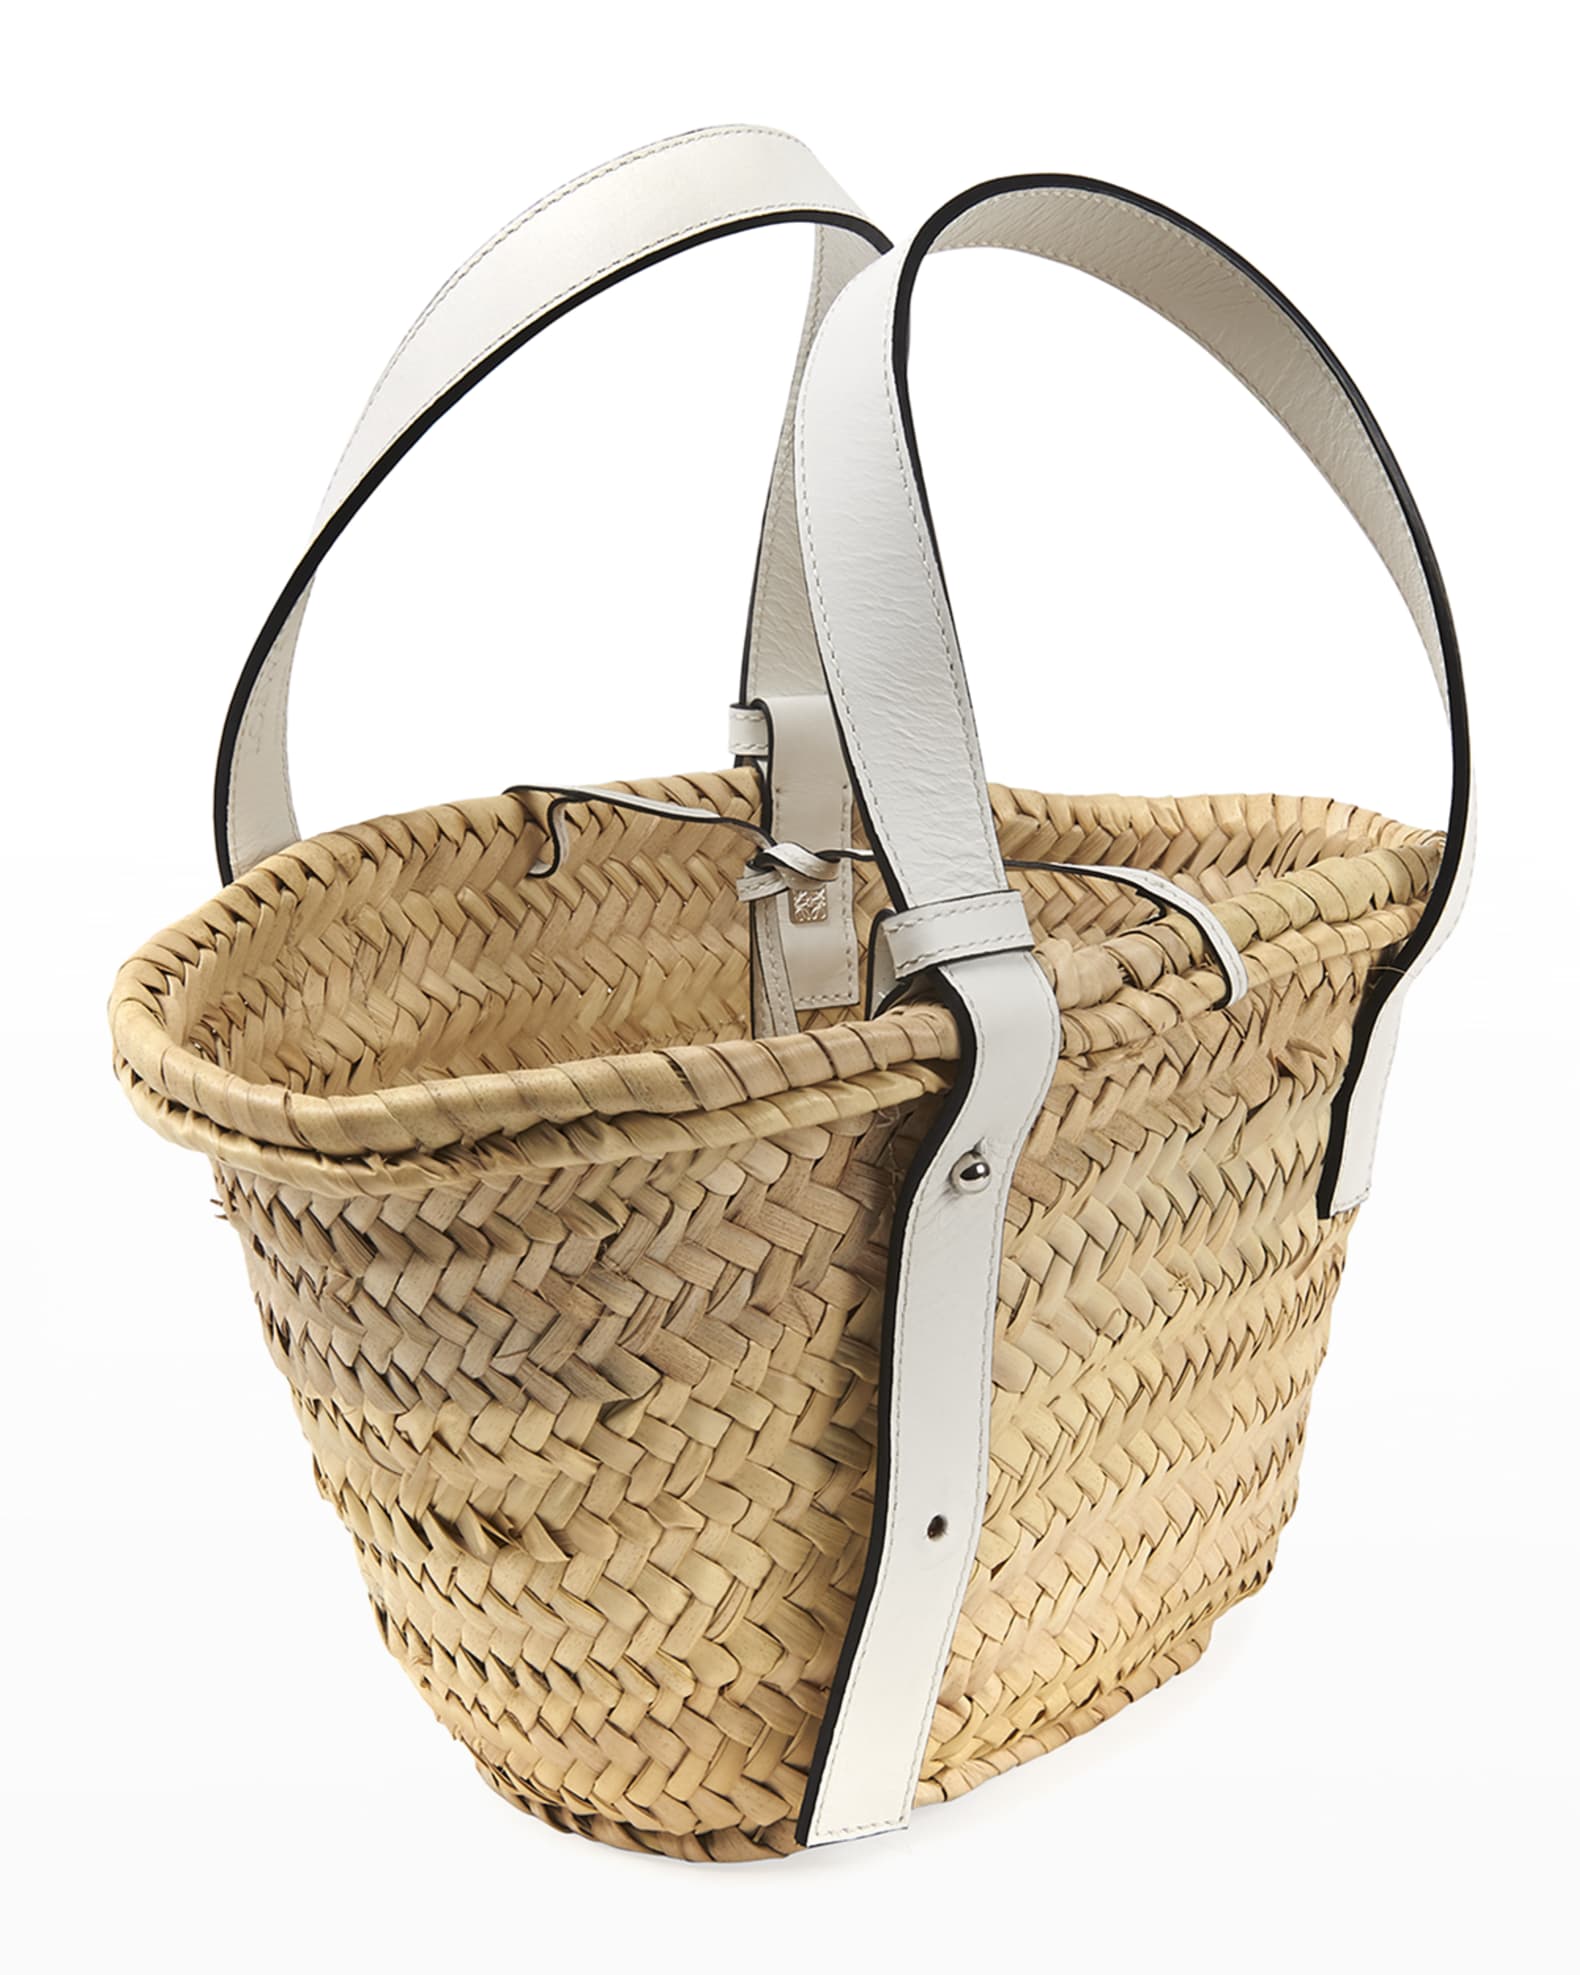 Loewe – Paula's Ibiza Basket Bag Natural/Tan